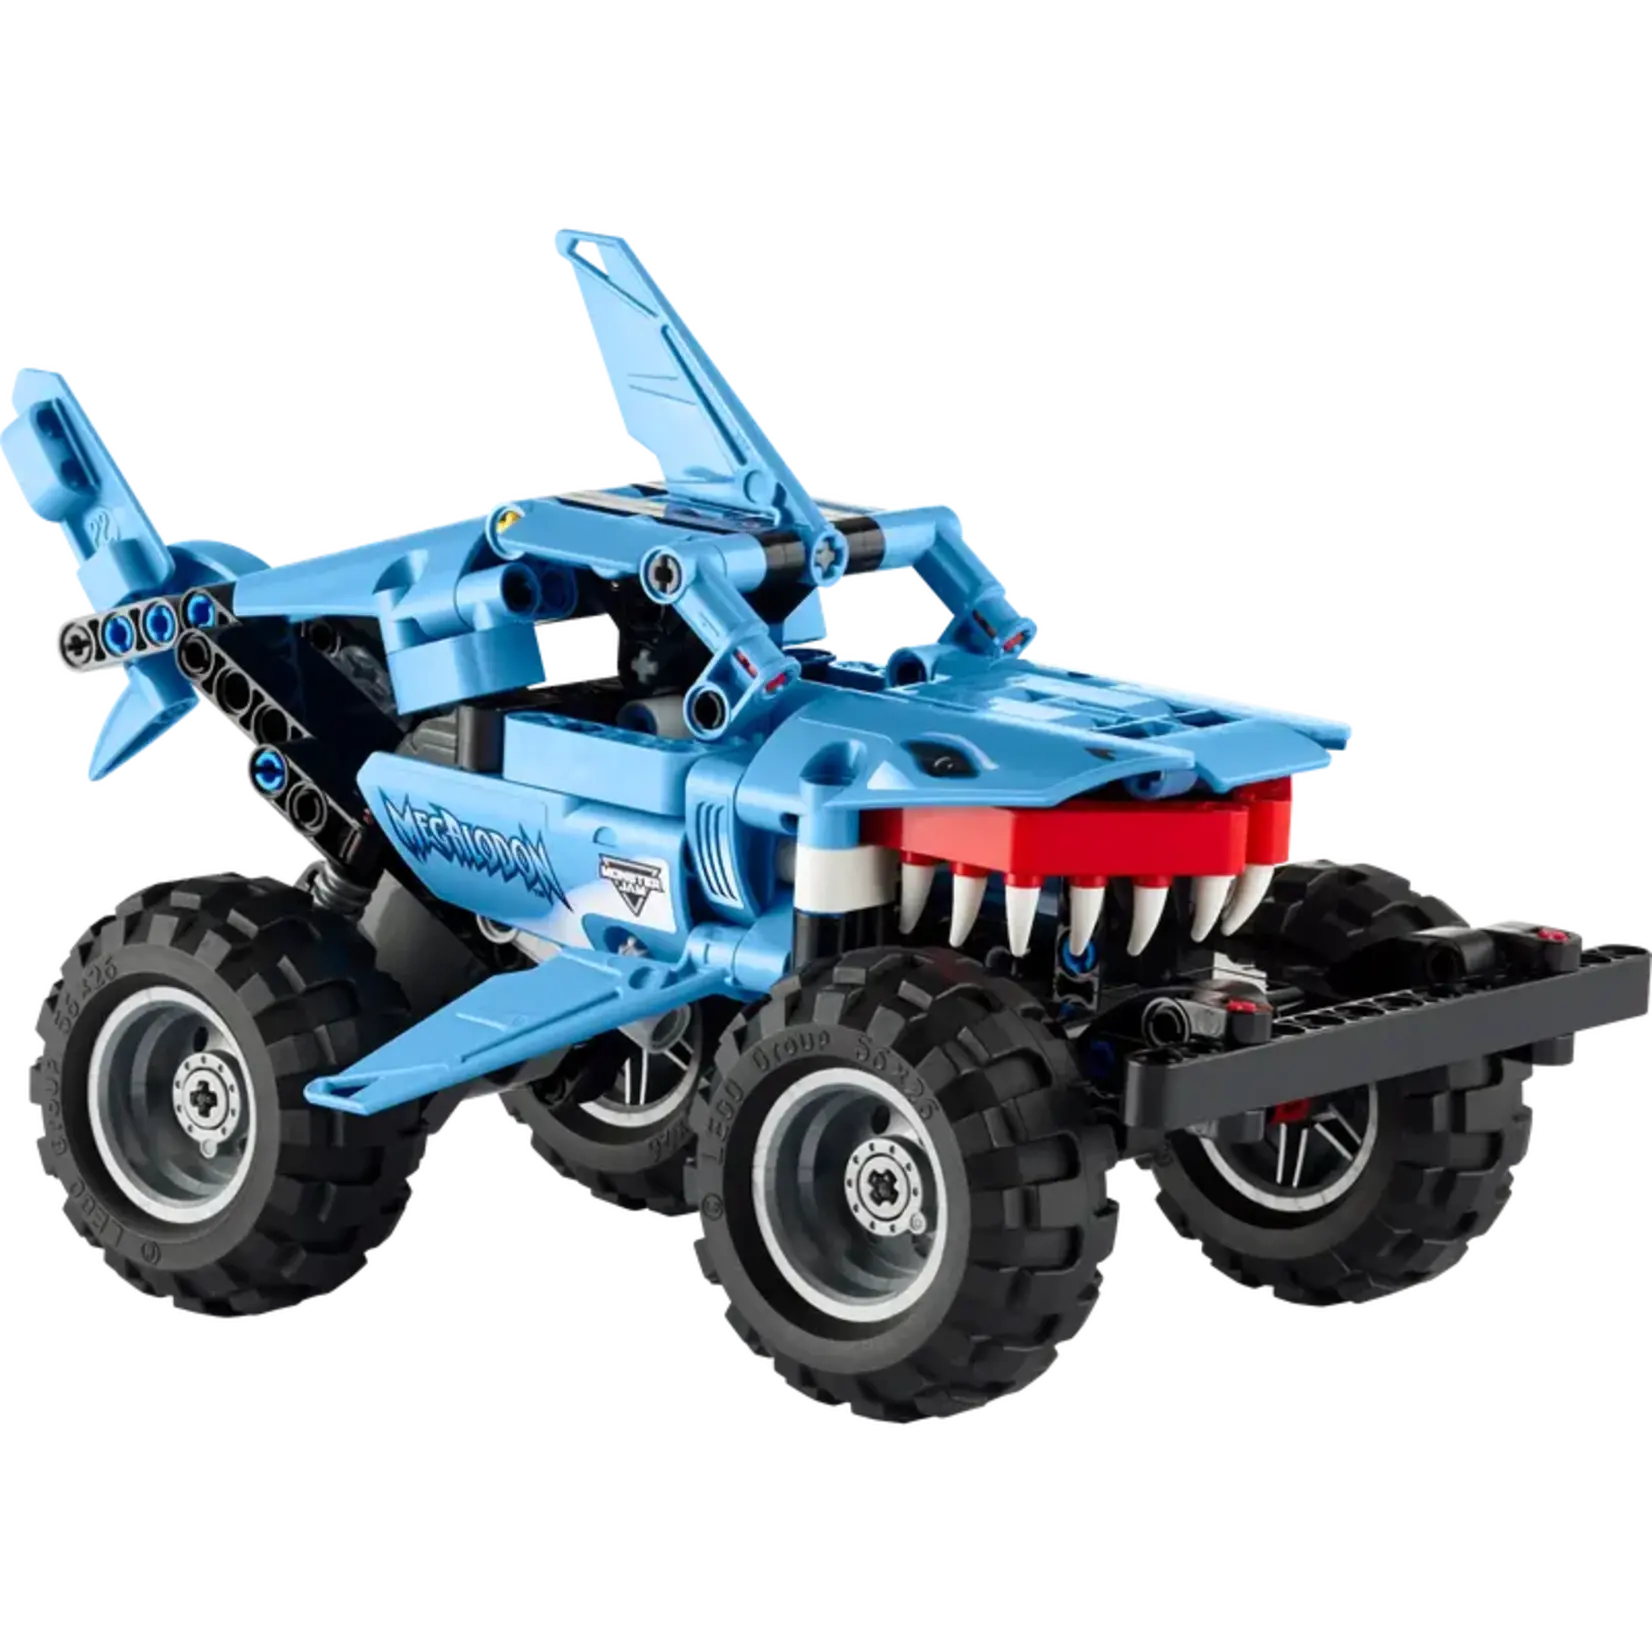 LEGO LEGO Technic Monster Jam Megalodon